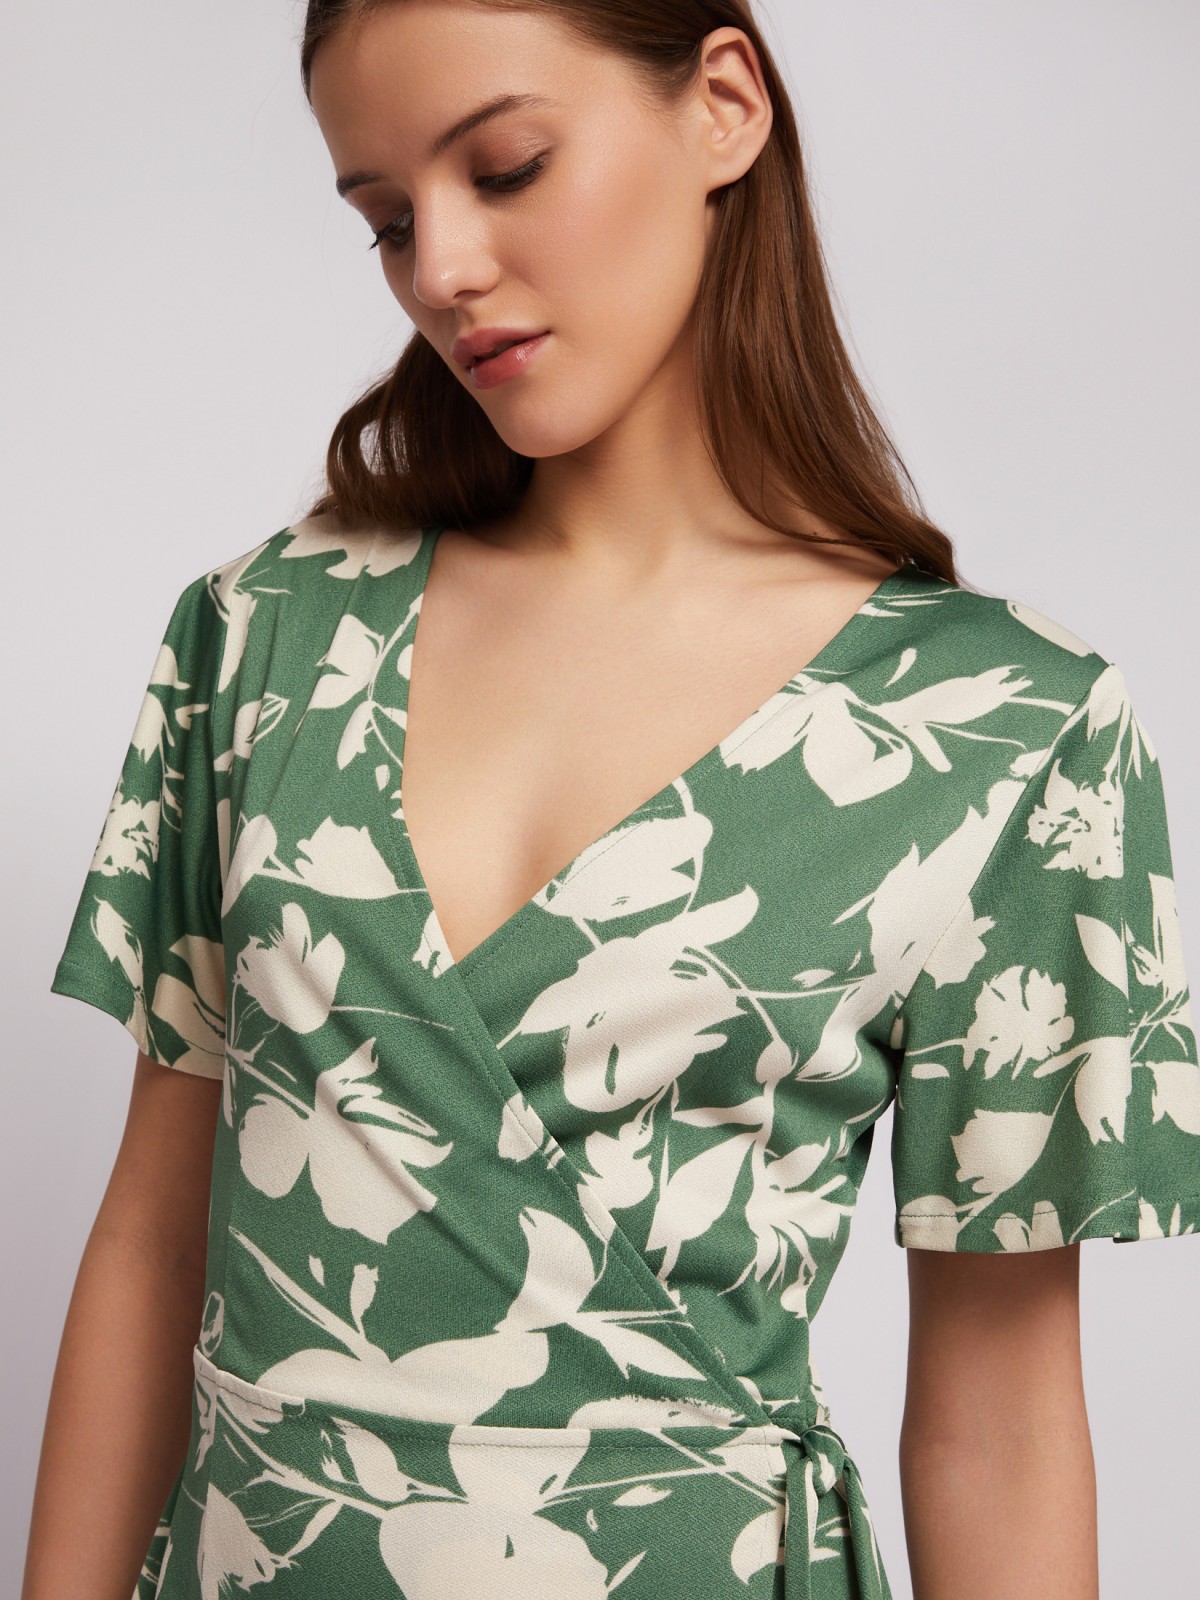 Приталенное платье-халат с запахом и растительным принтом zolla N24218159111, цвет зеленый, размер M - фото 4